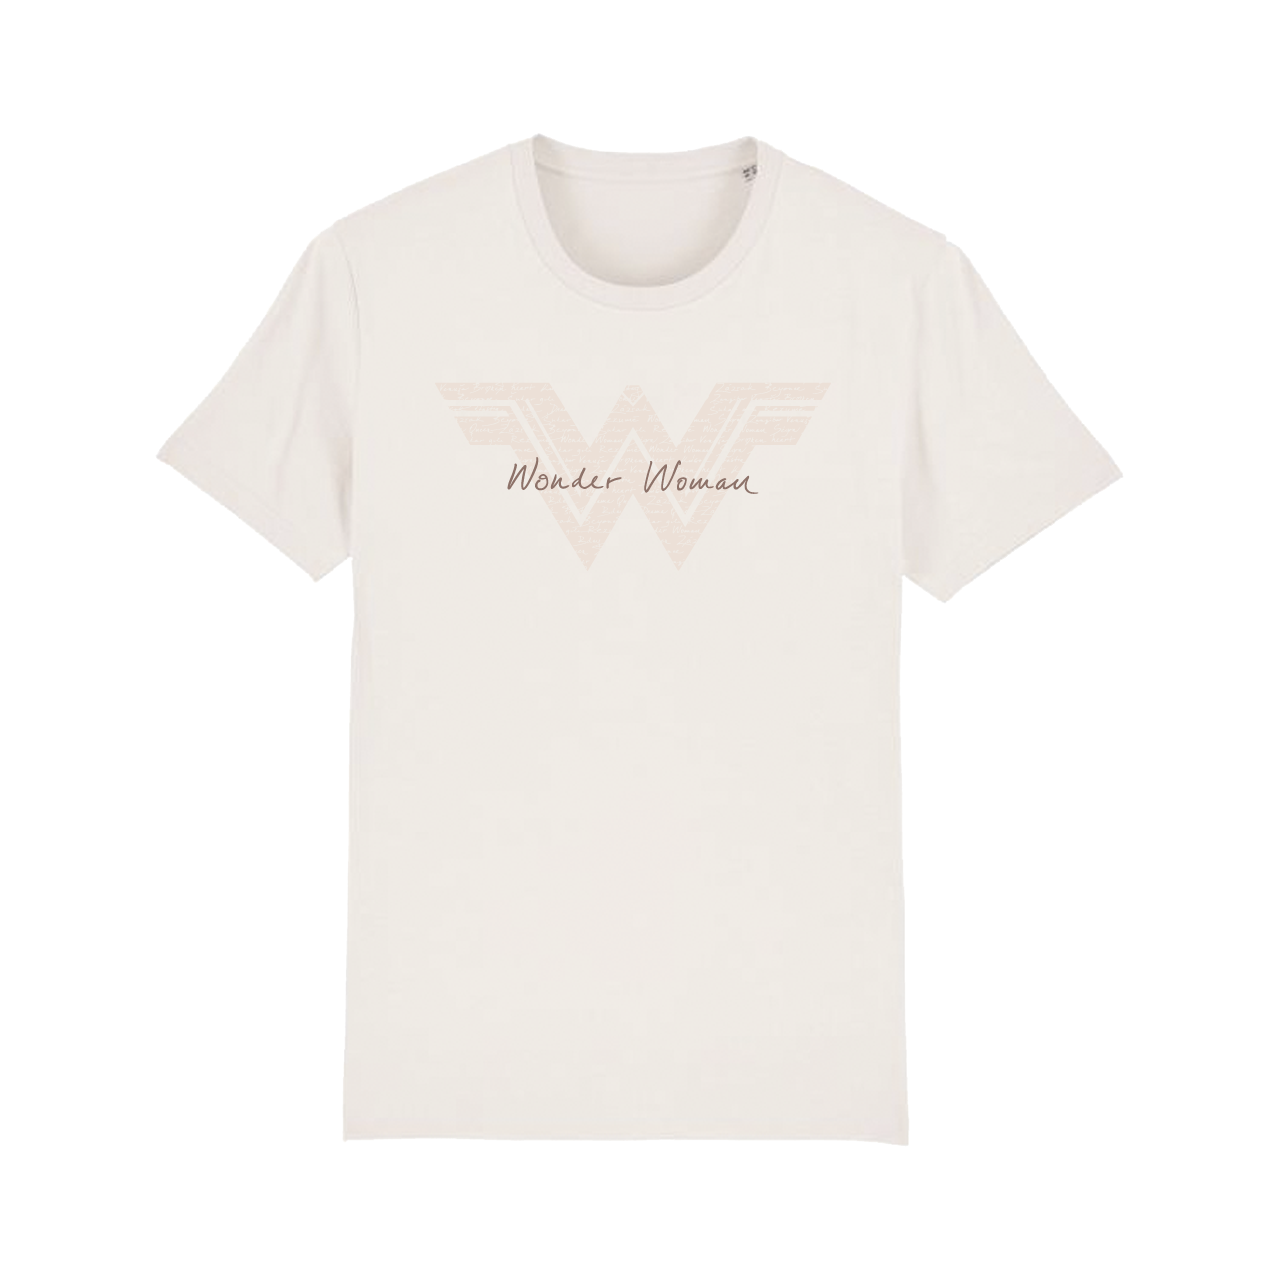 E-shop Dominika Mirgová tričko Wonder Woman Vintage White L